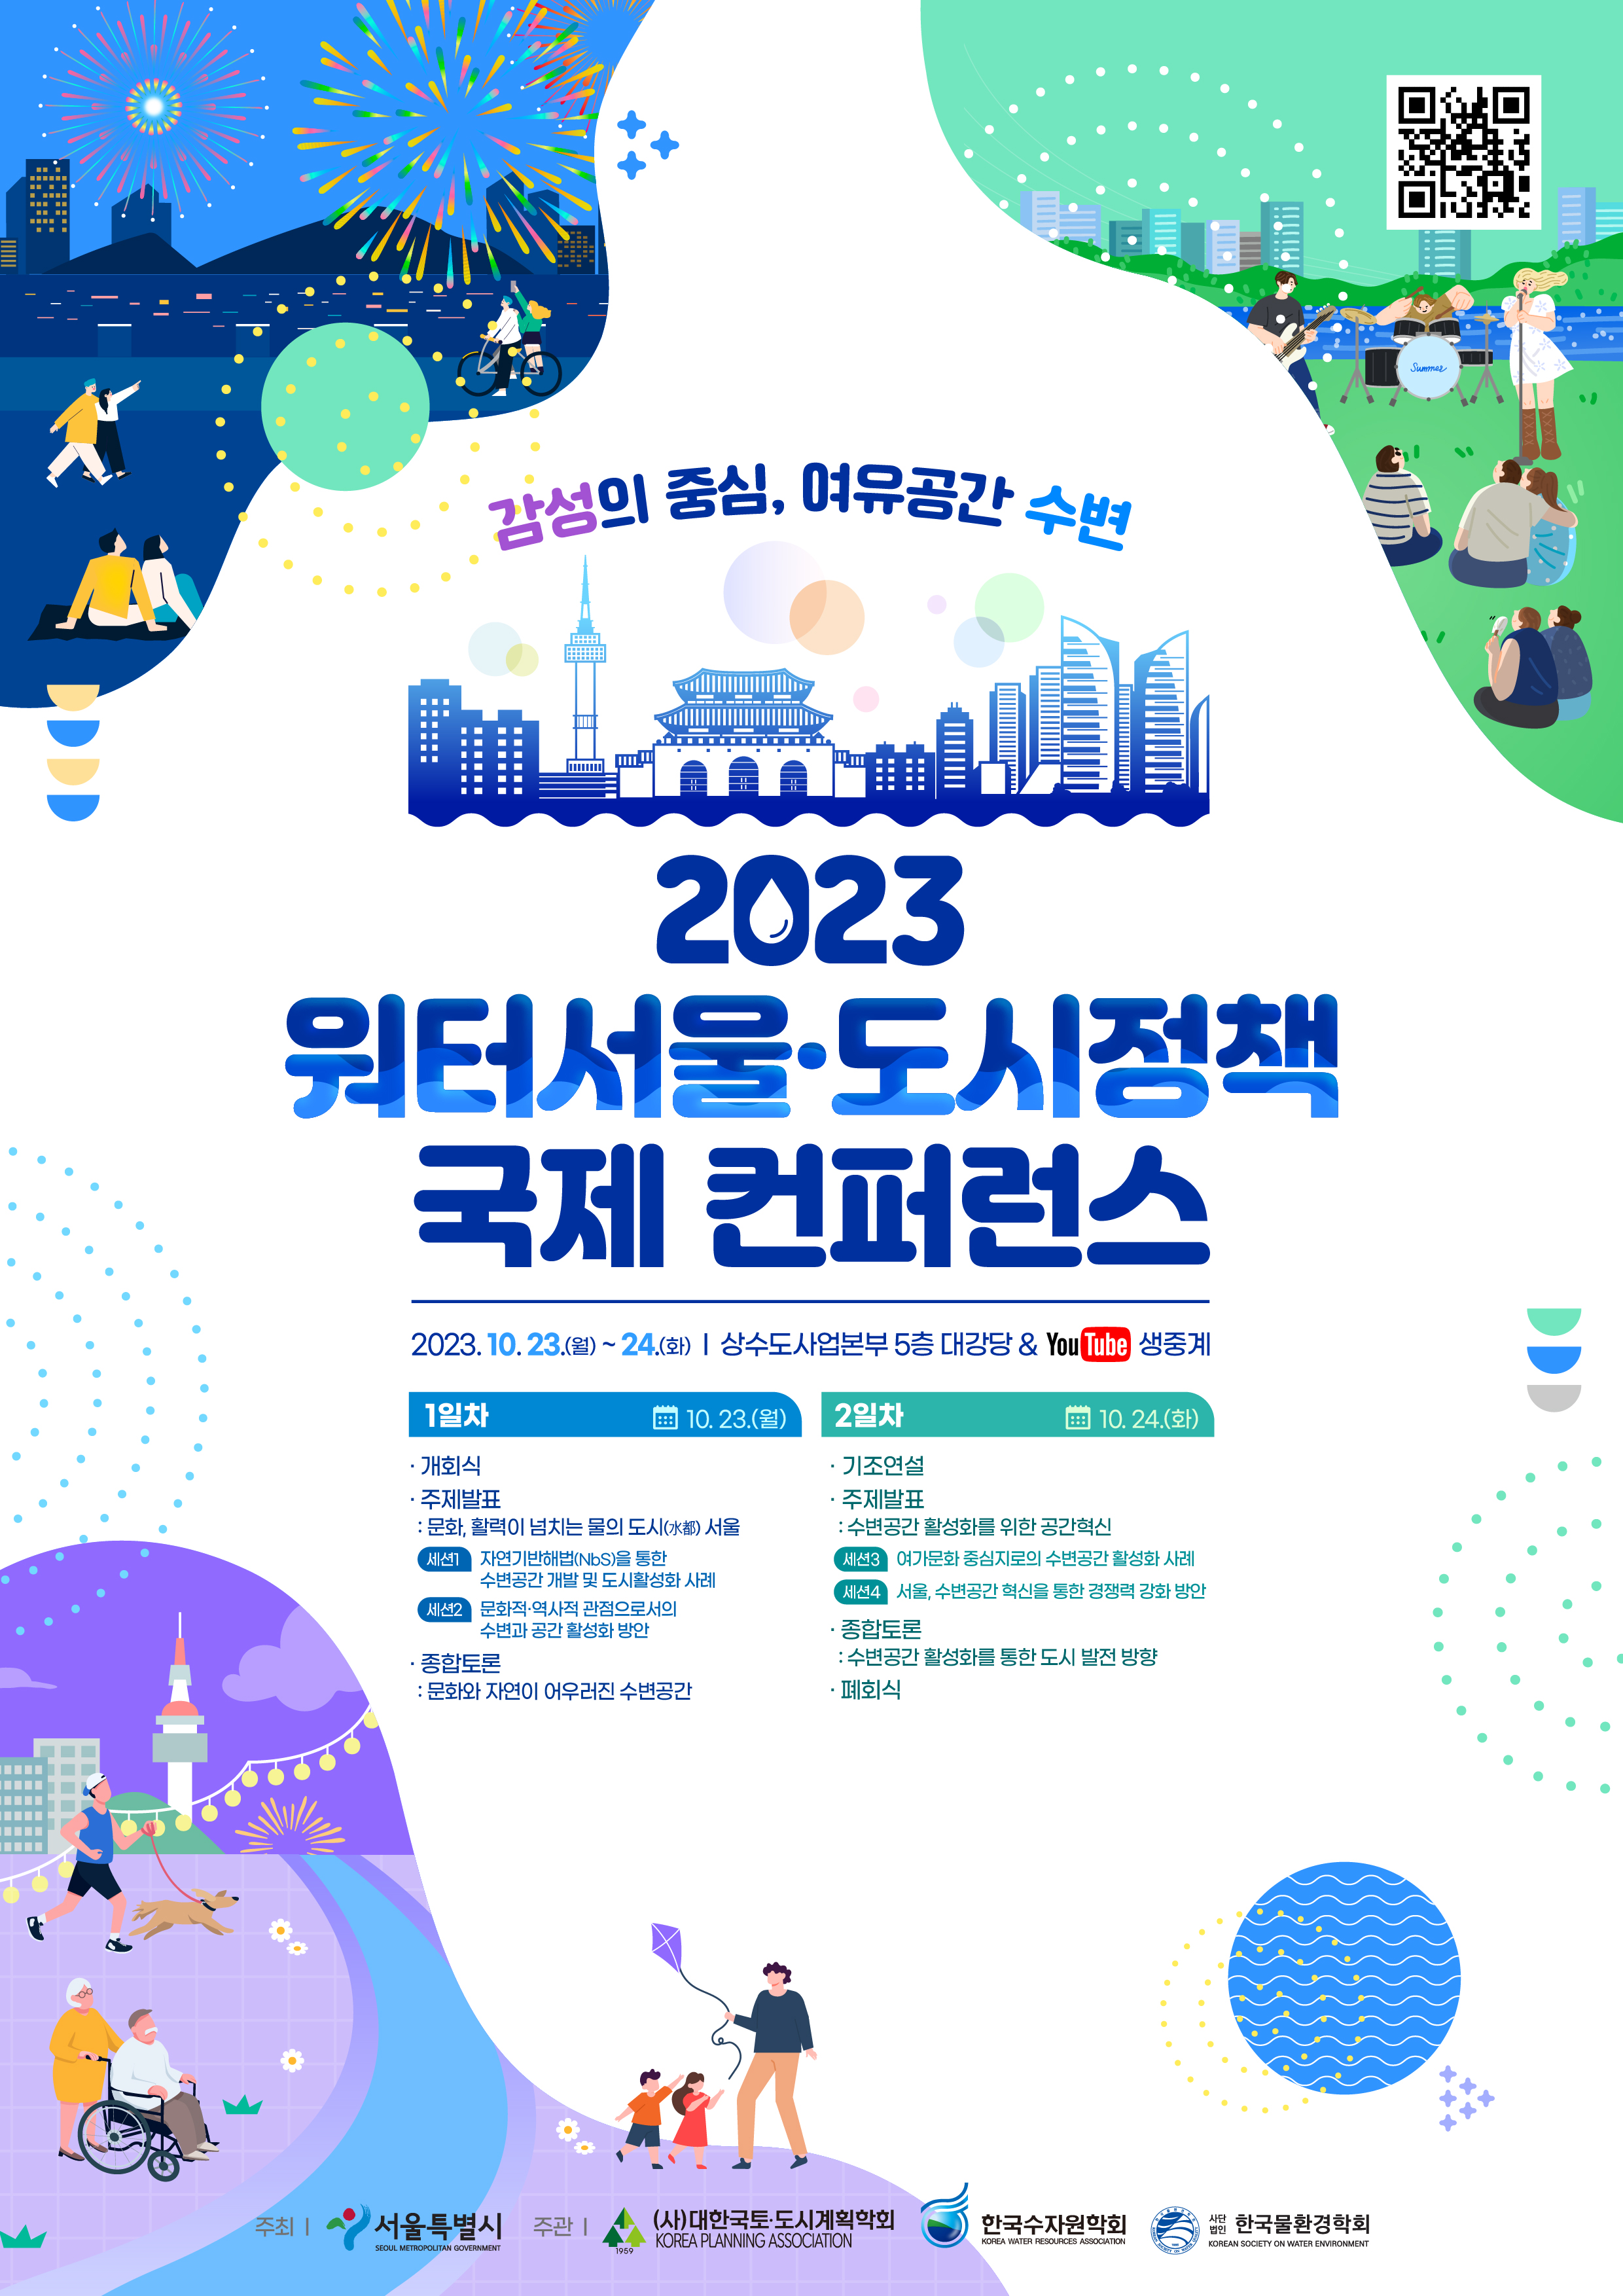 2023 워터서울·도시정책 국제 컨퍼런스 개최 안내